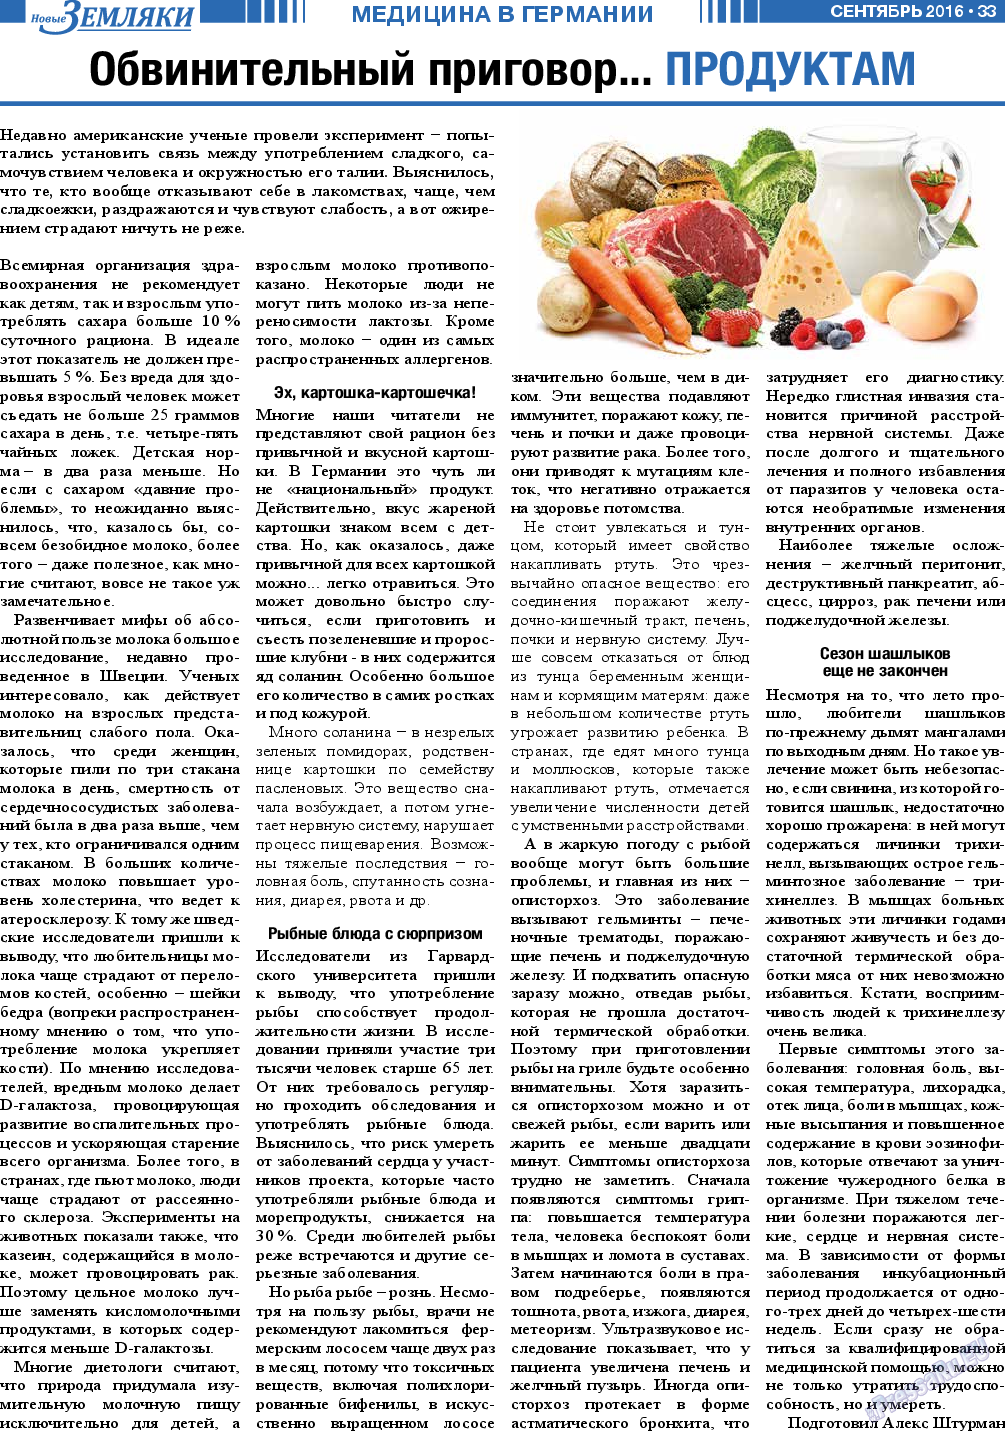 Новые Земляки, газета. 2016 №9 стр.33